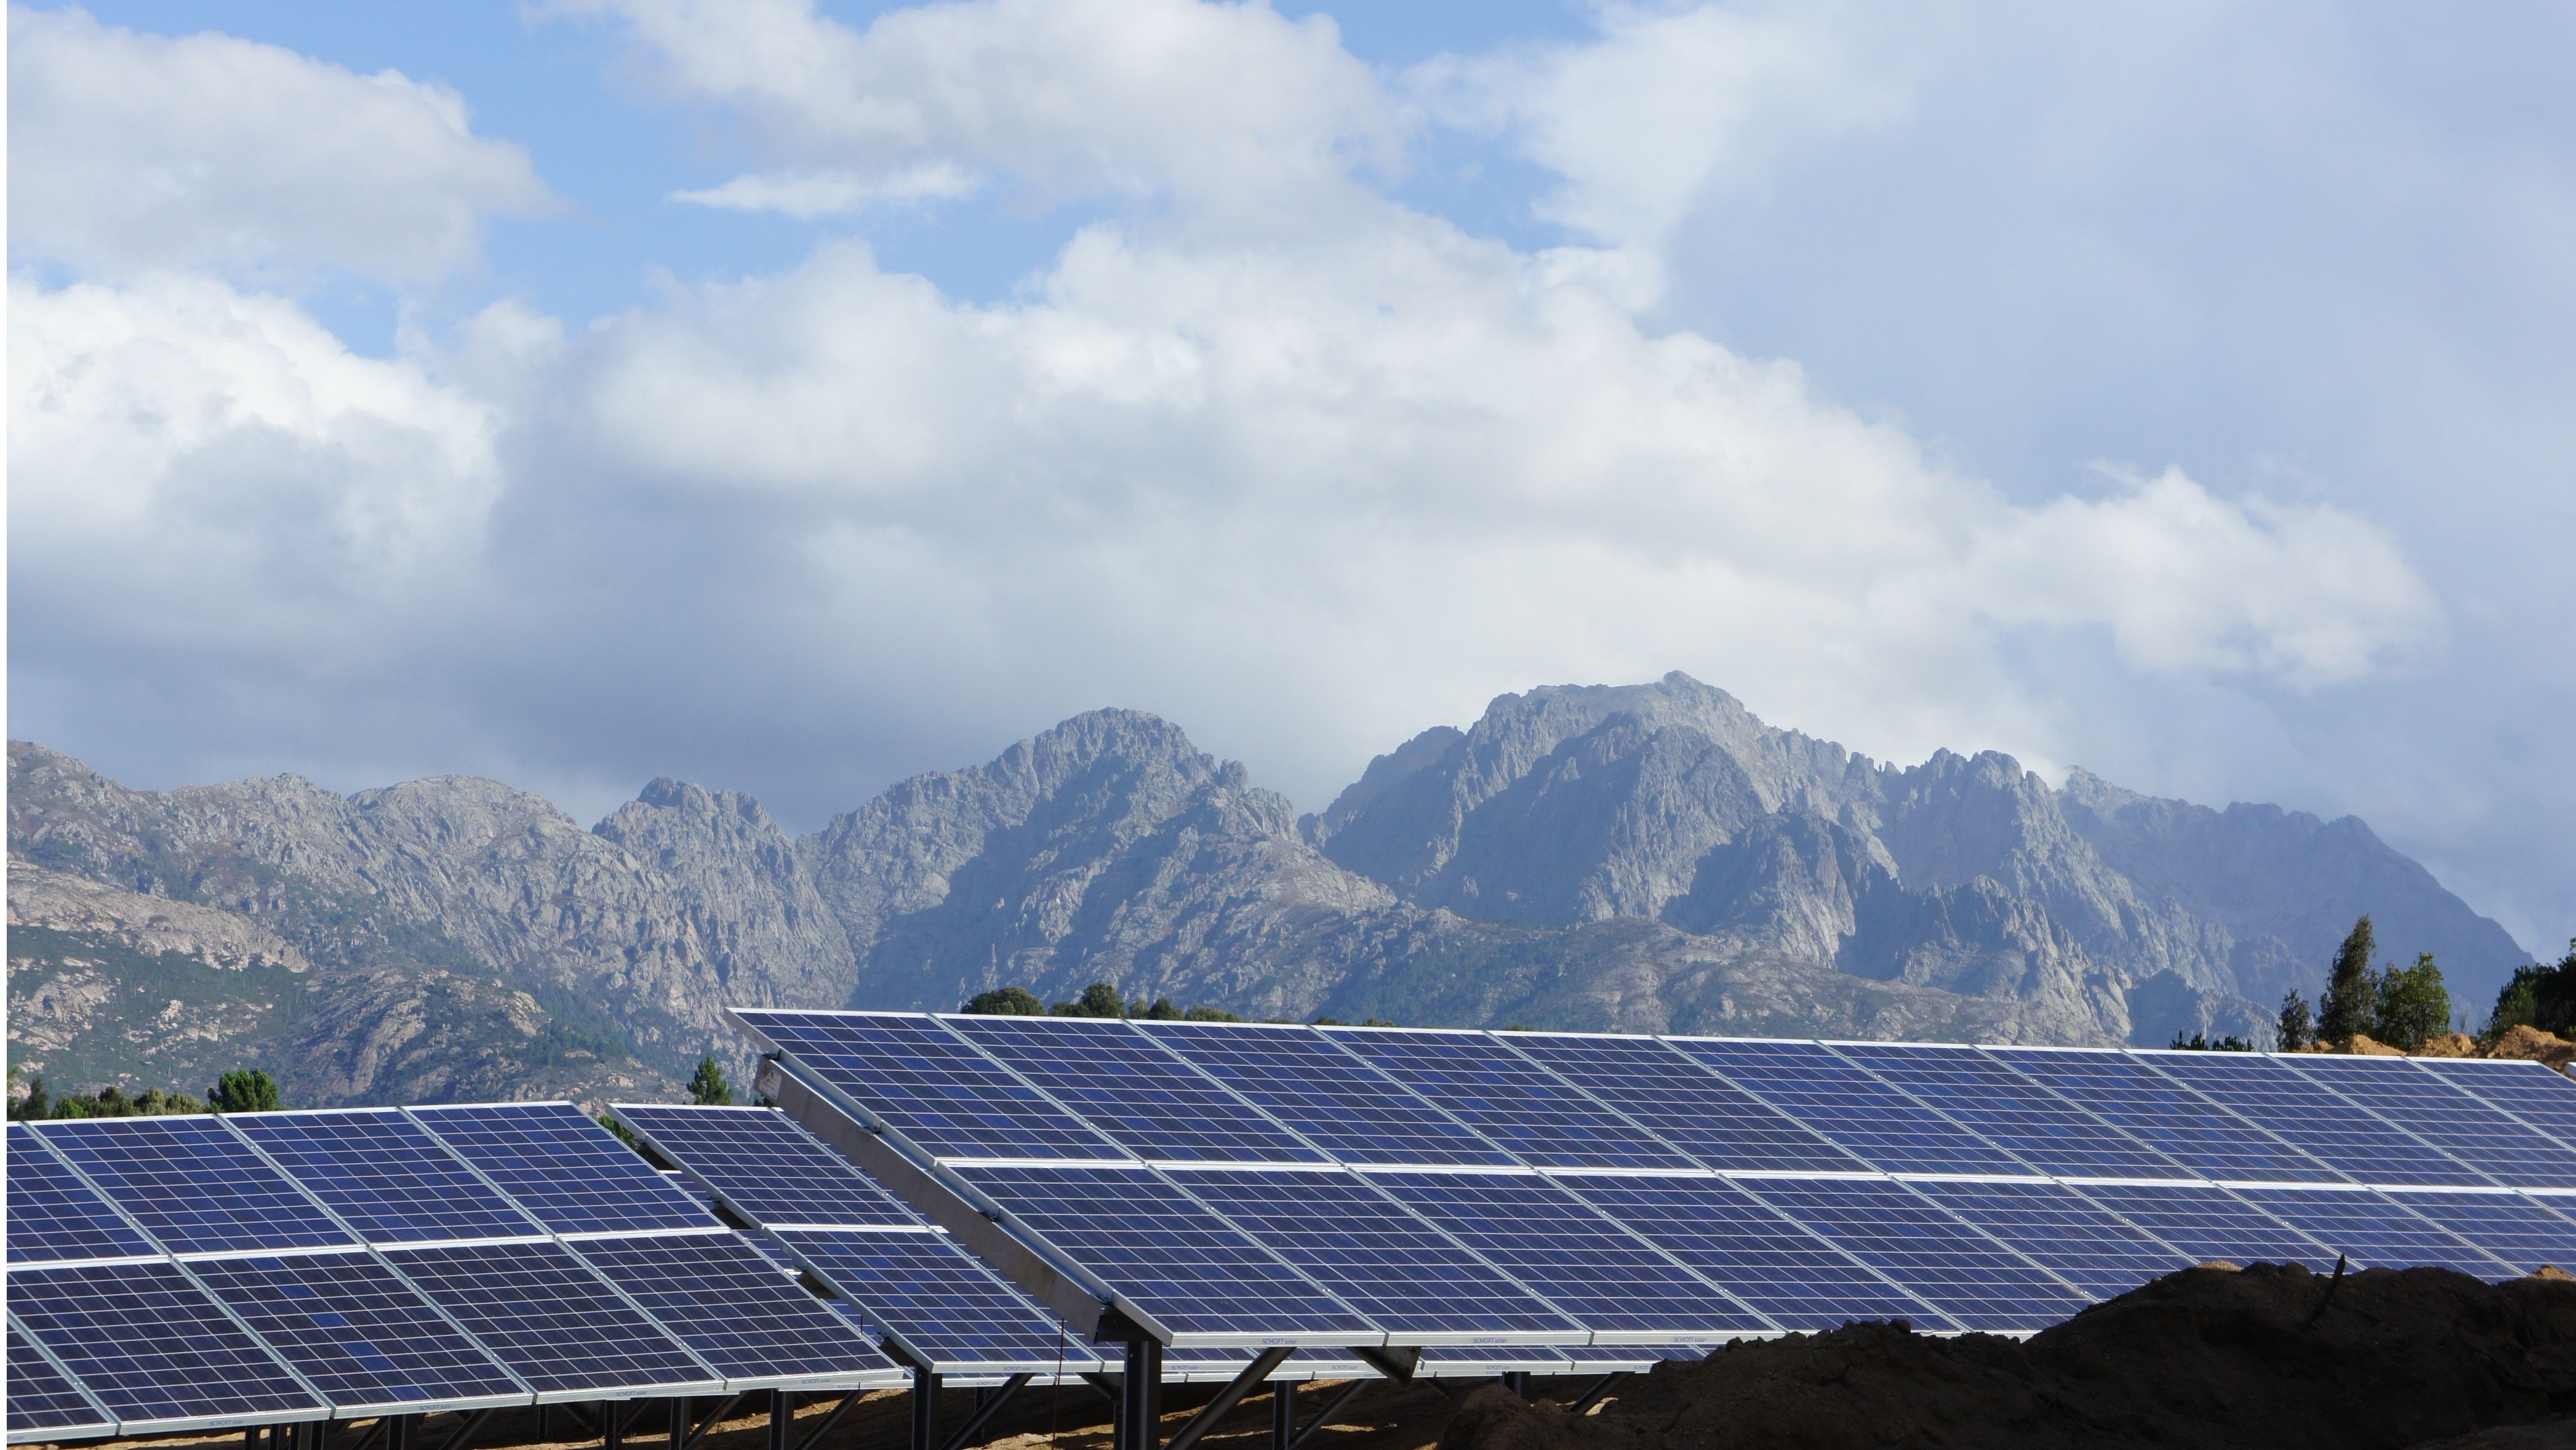 12.12.2013 - SolarKapital changes O&M service provider in Corsica